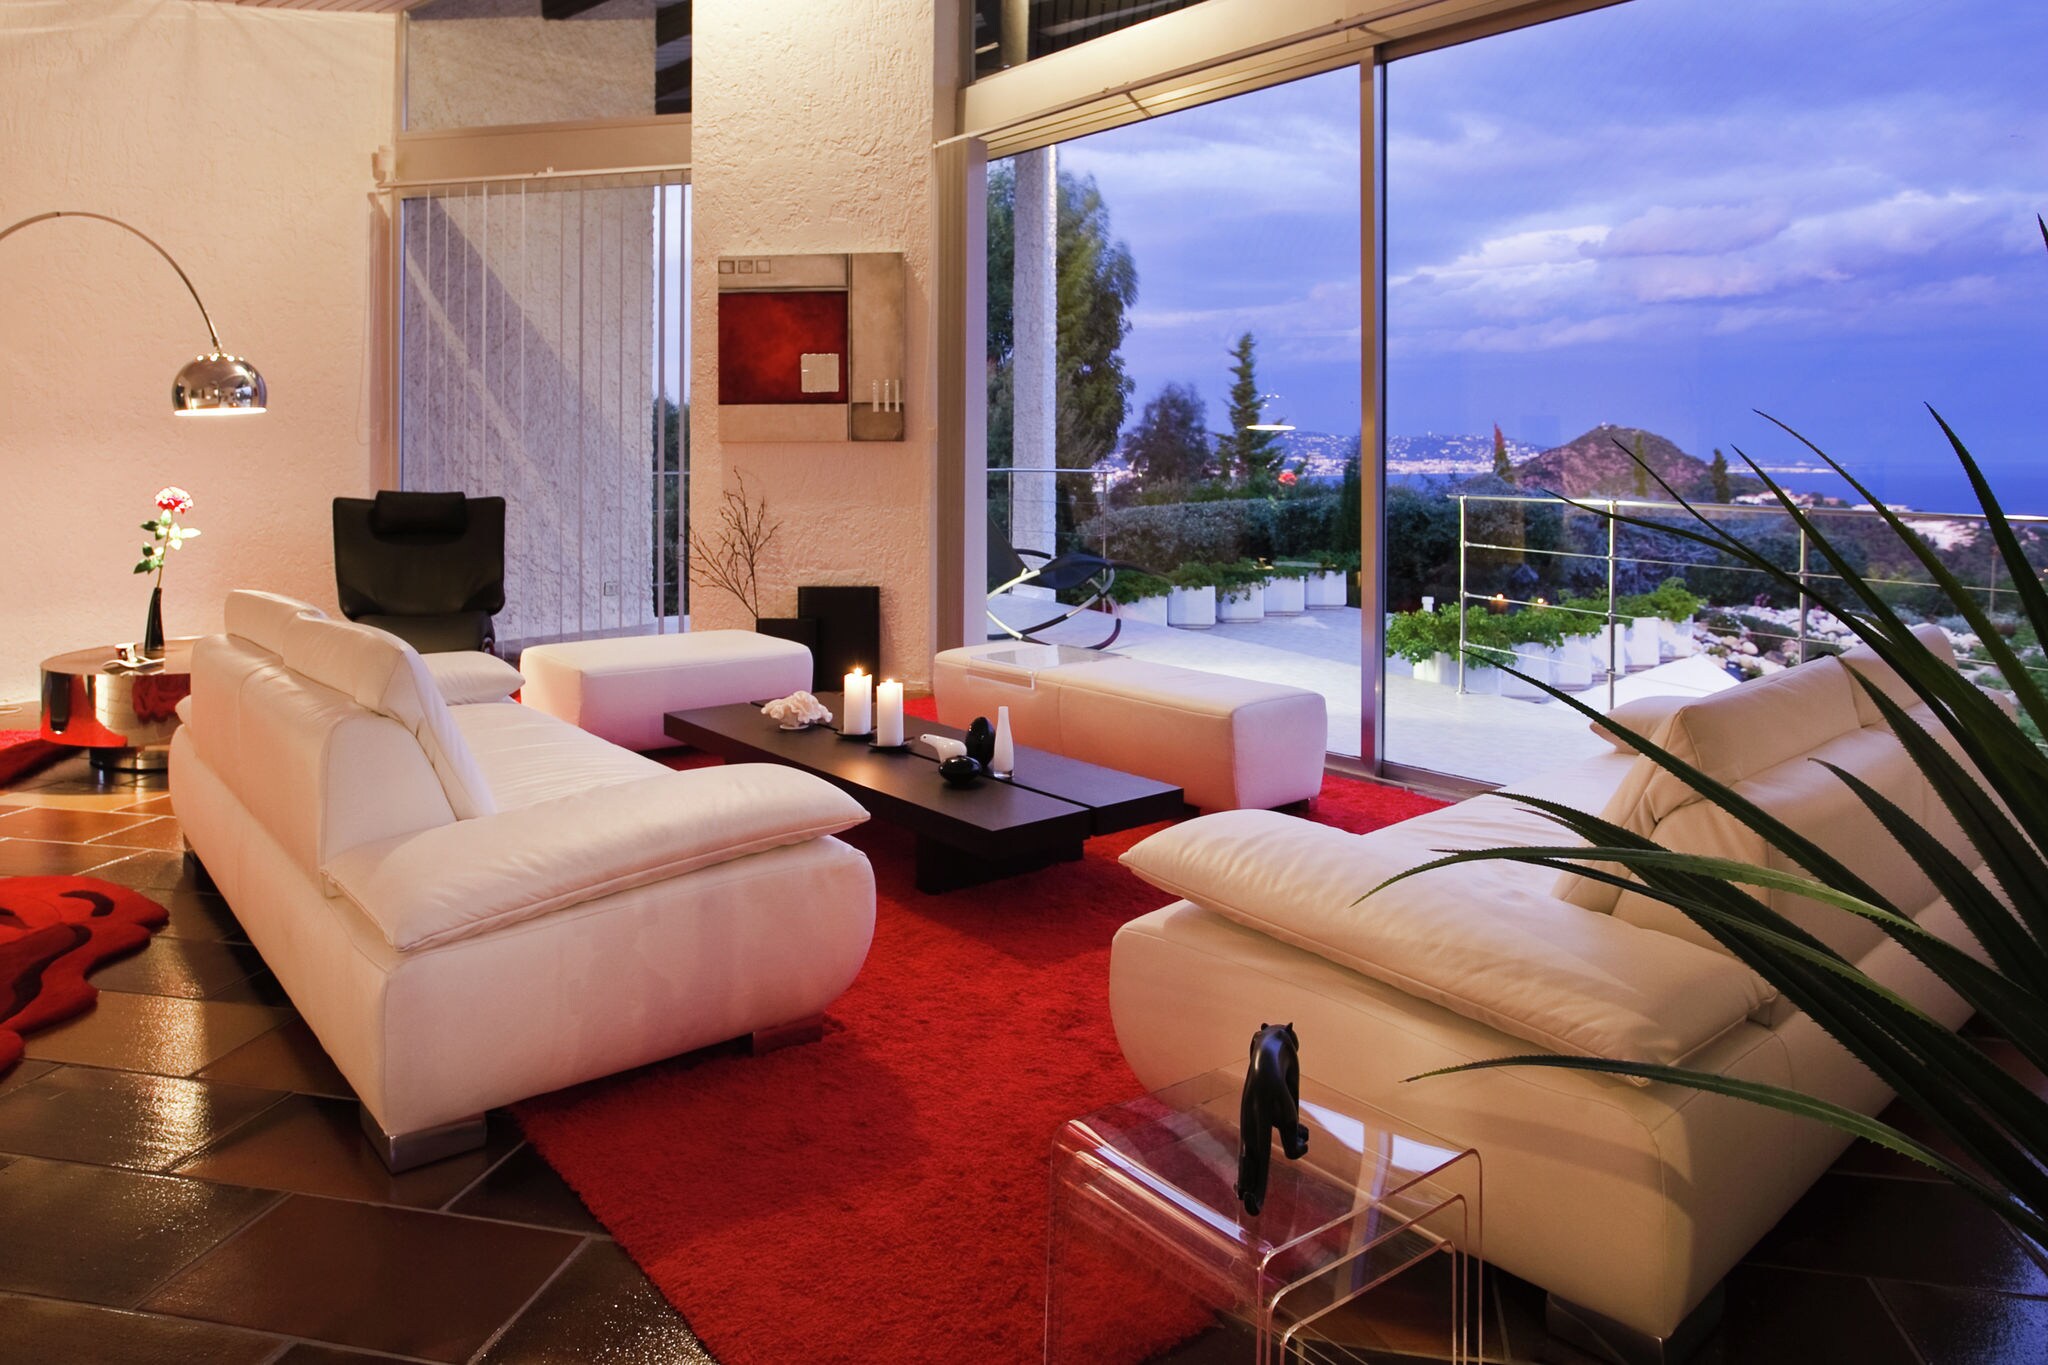 Luxuriöse Ferienwohnung in Architektenvilla mit See- und Bergblick in ruhiger Lage